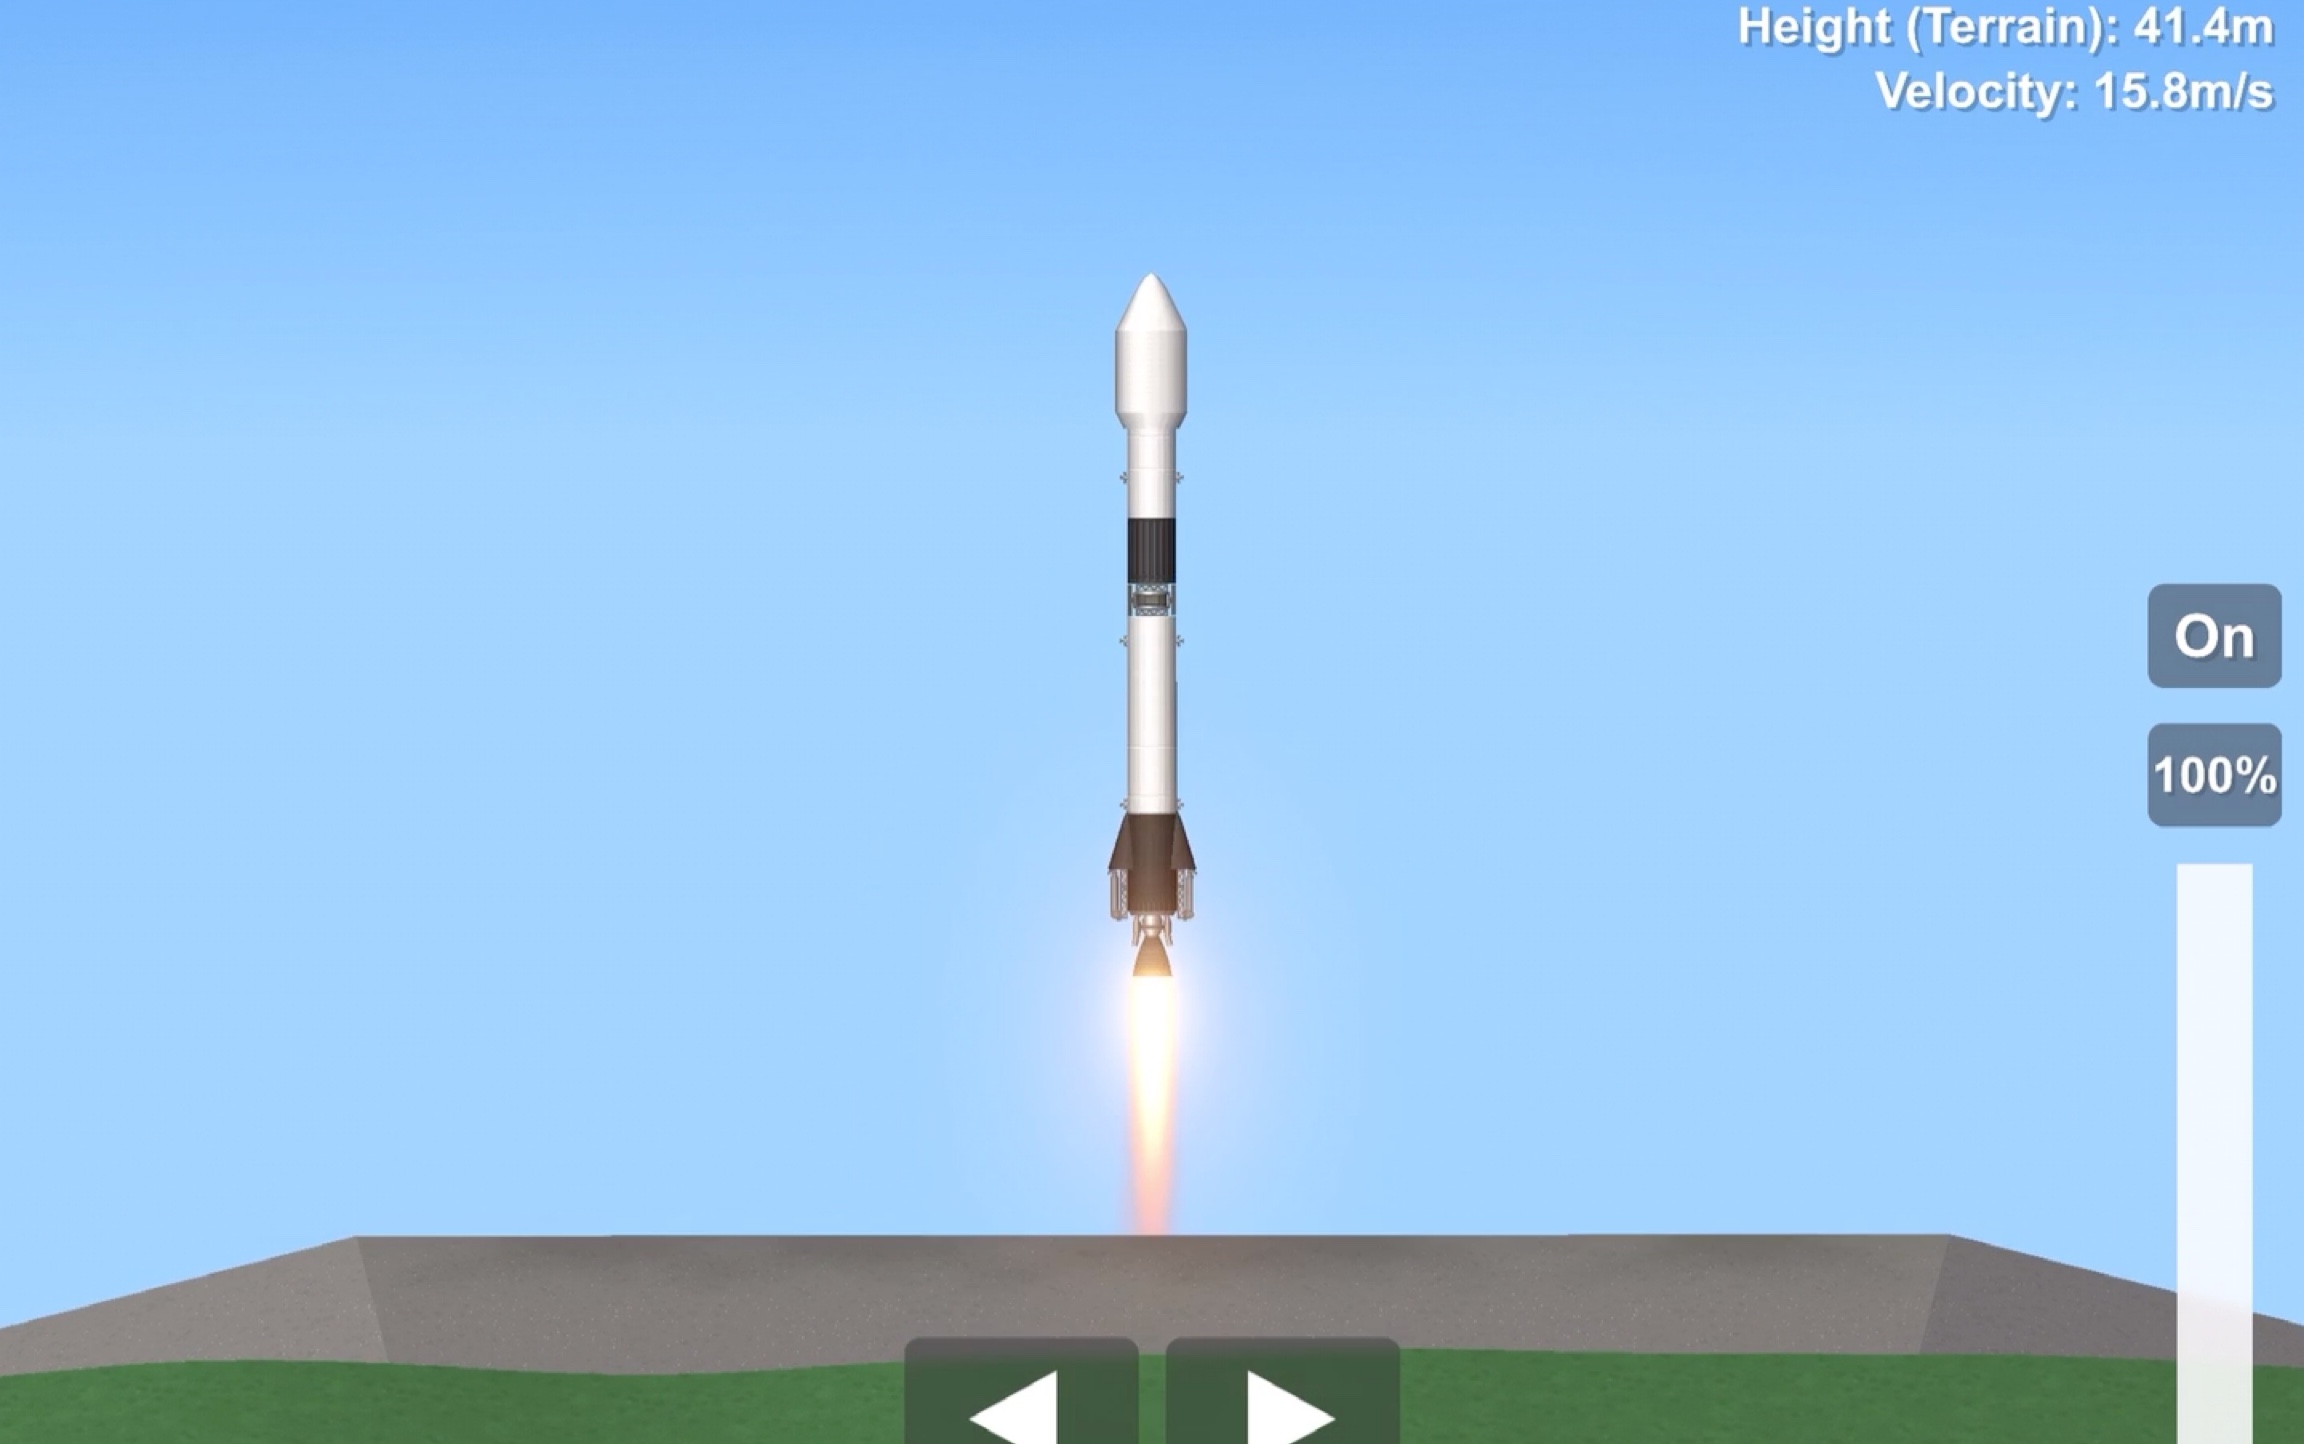 火箭模拟